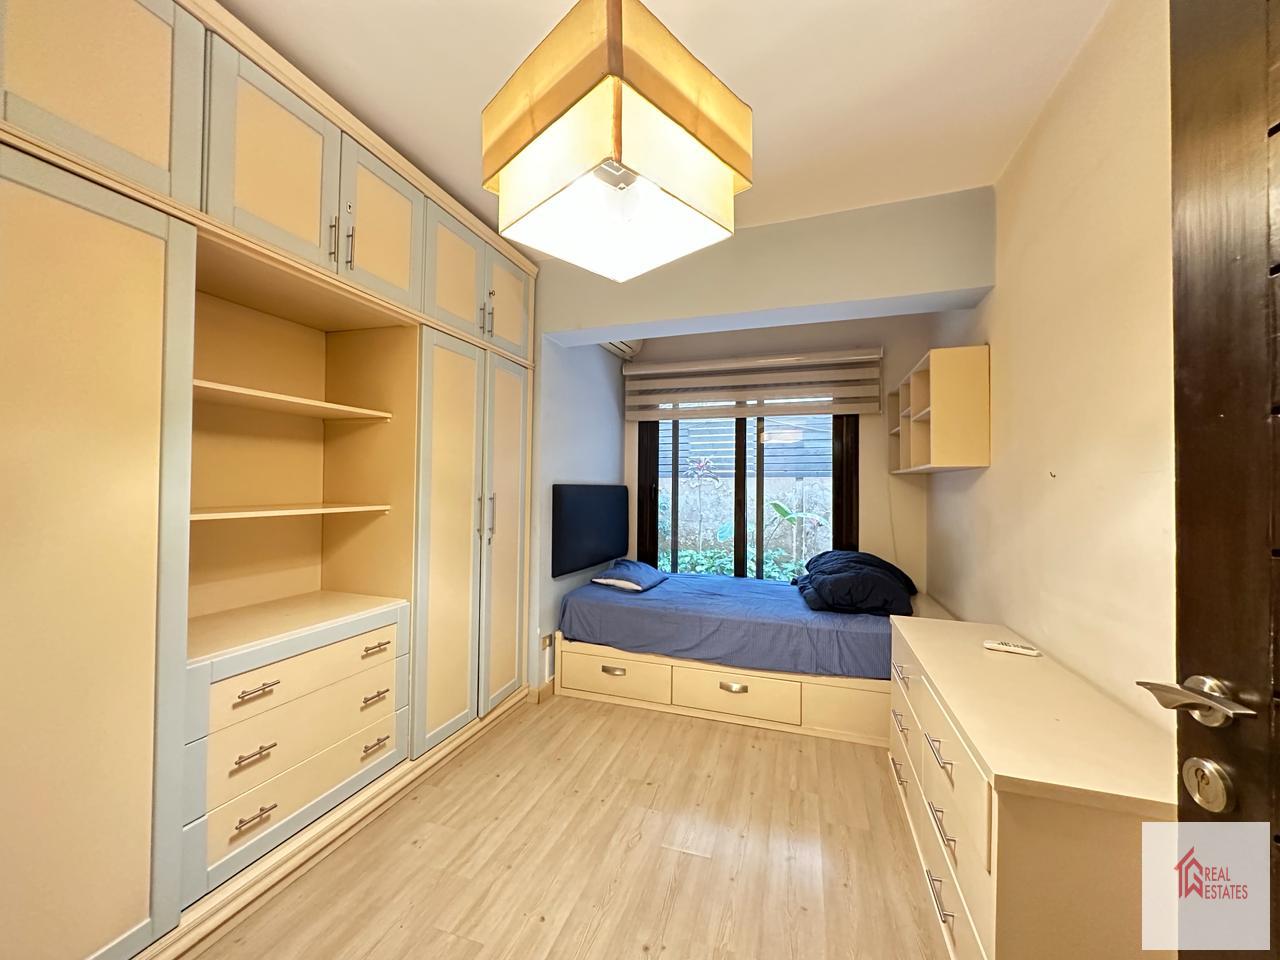 Zemin kat, 5 yatak odası, 3 banyo, 2 ebeveyn, mobilyalı, özel giriş, özel teras, 1.500$